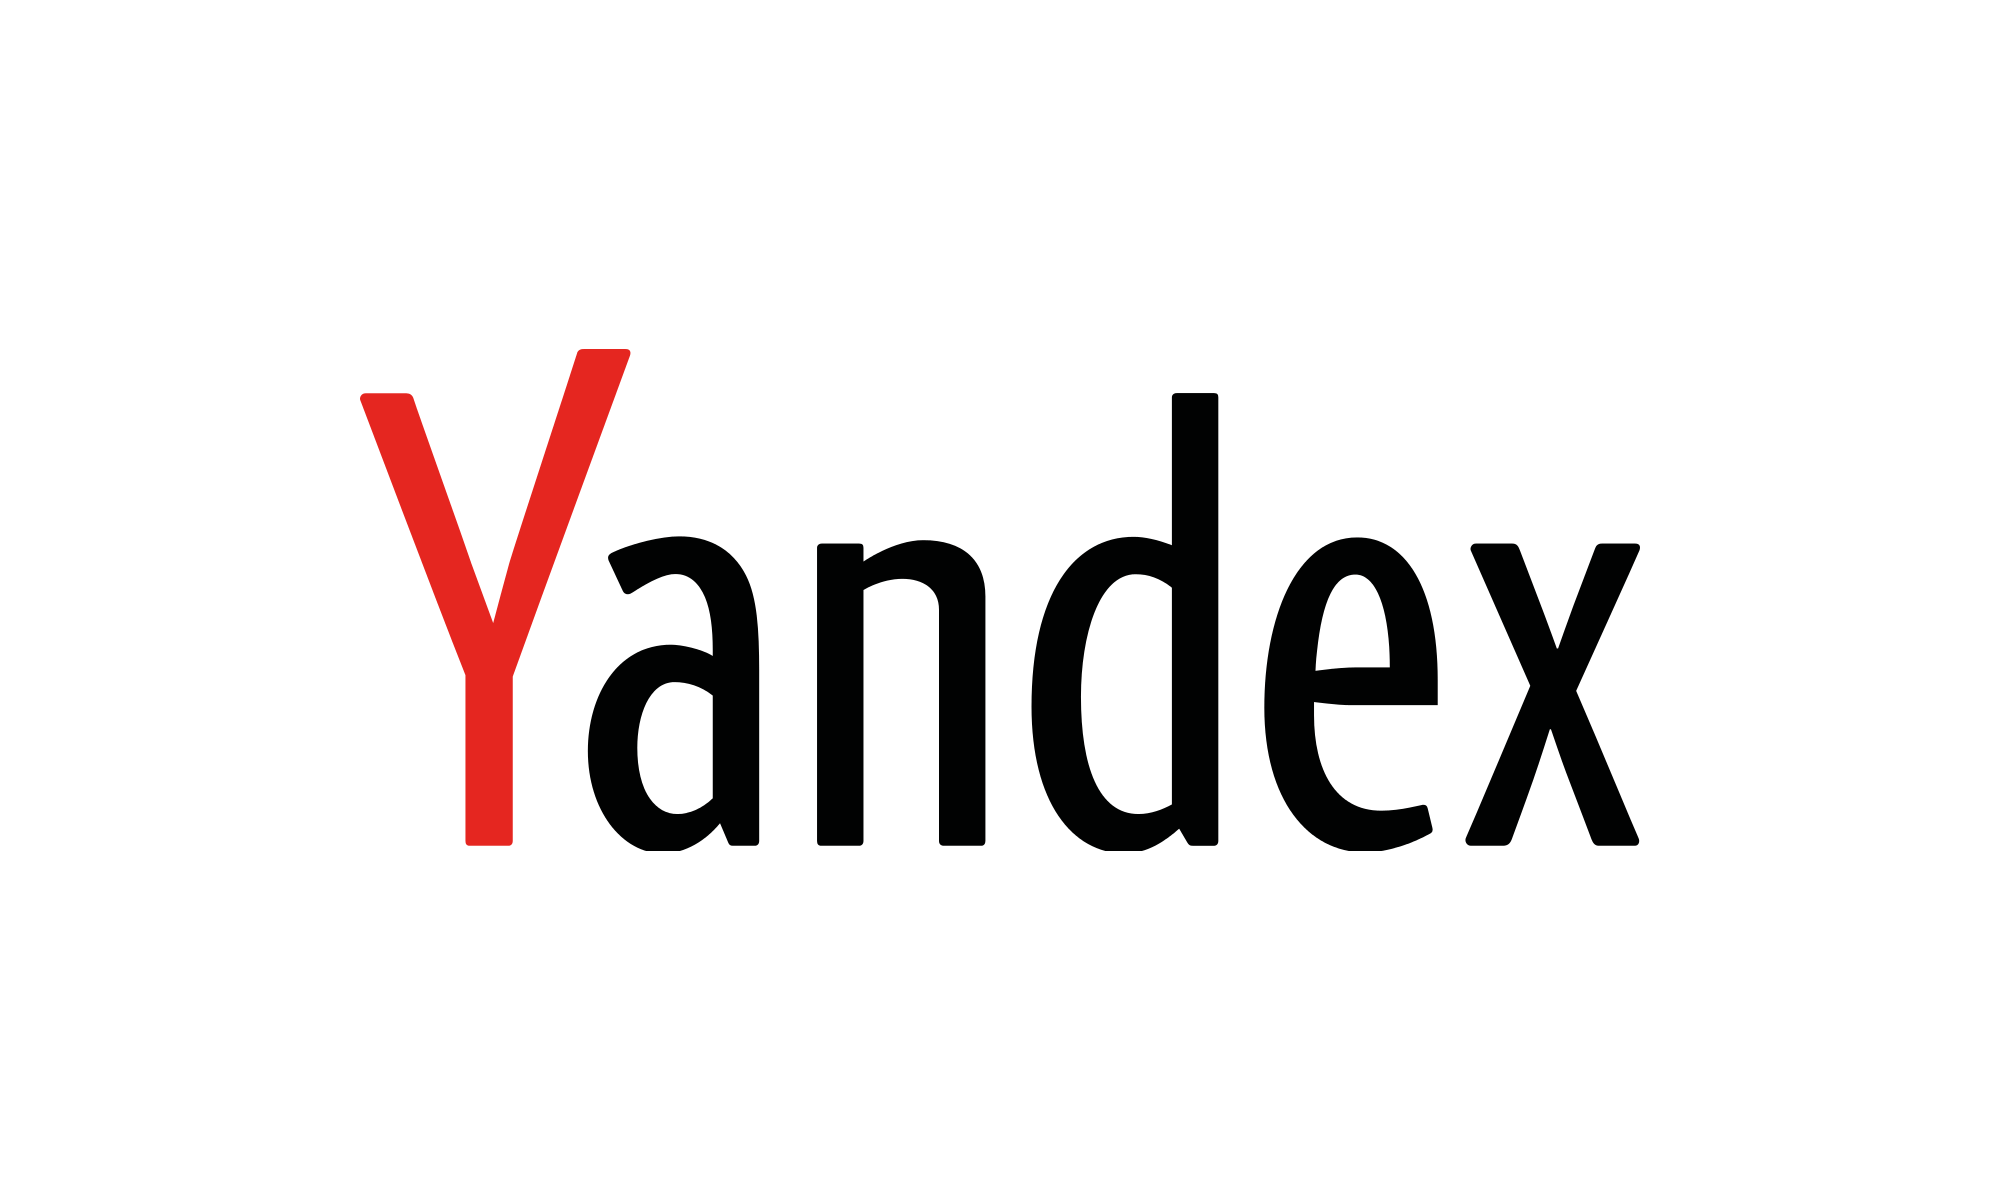 Yandex częściowo sprzedany za 5,4 miliarda dolarów. Kto jest nabywcą?